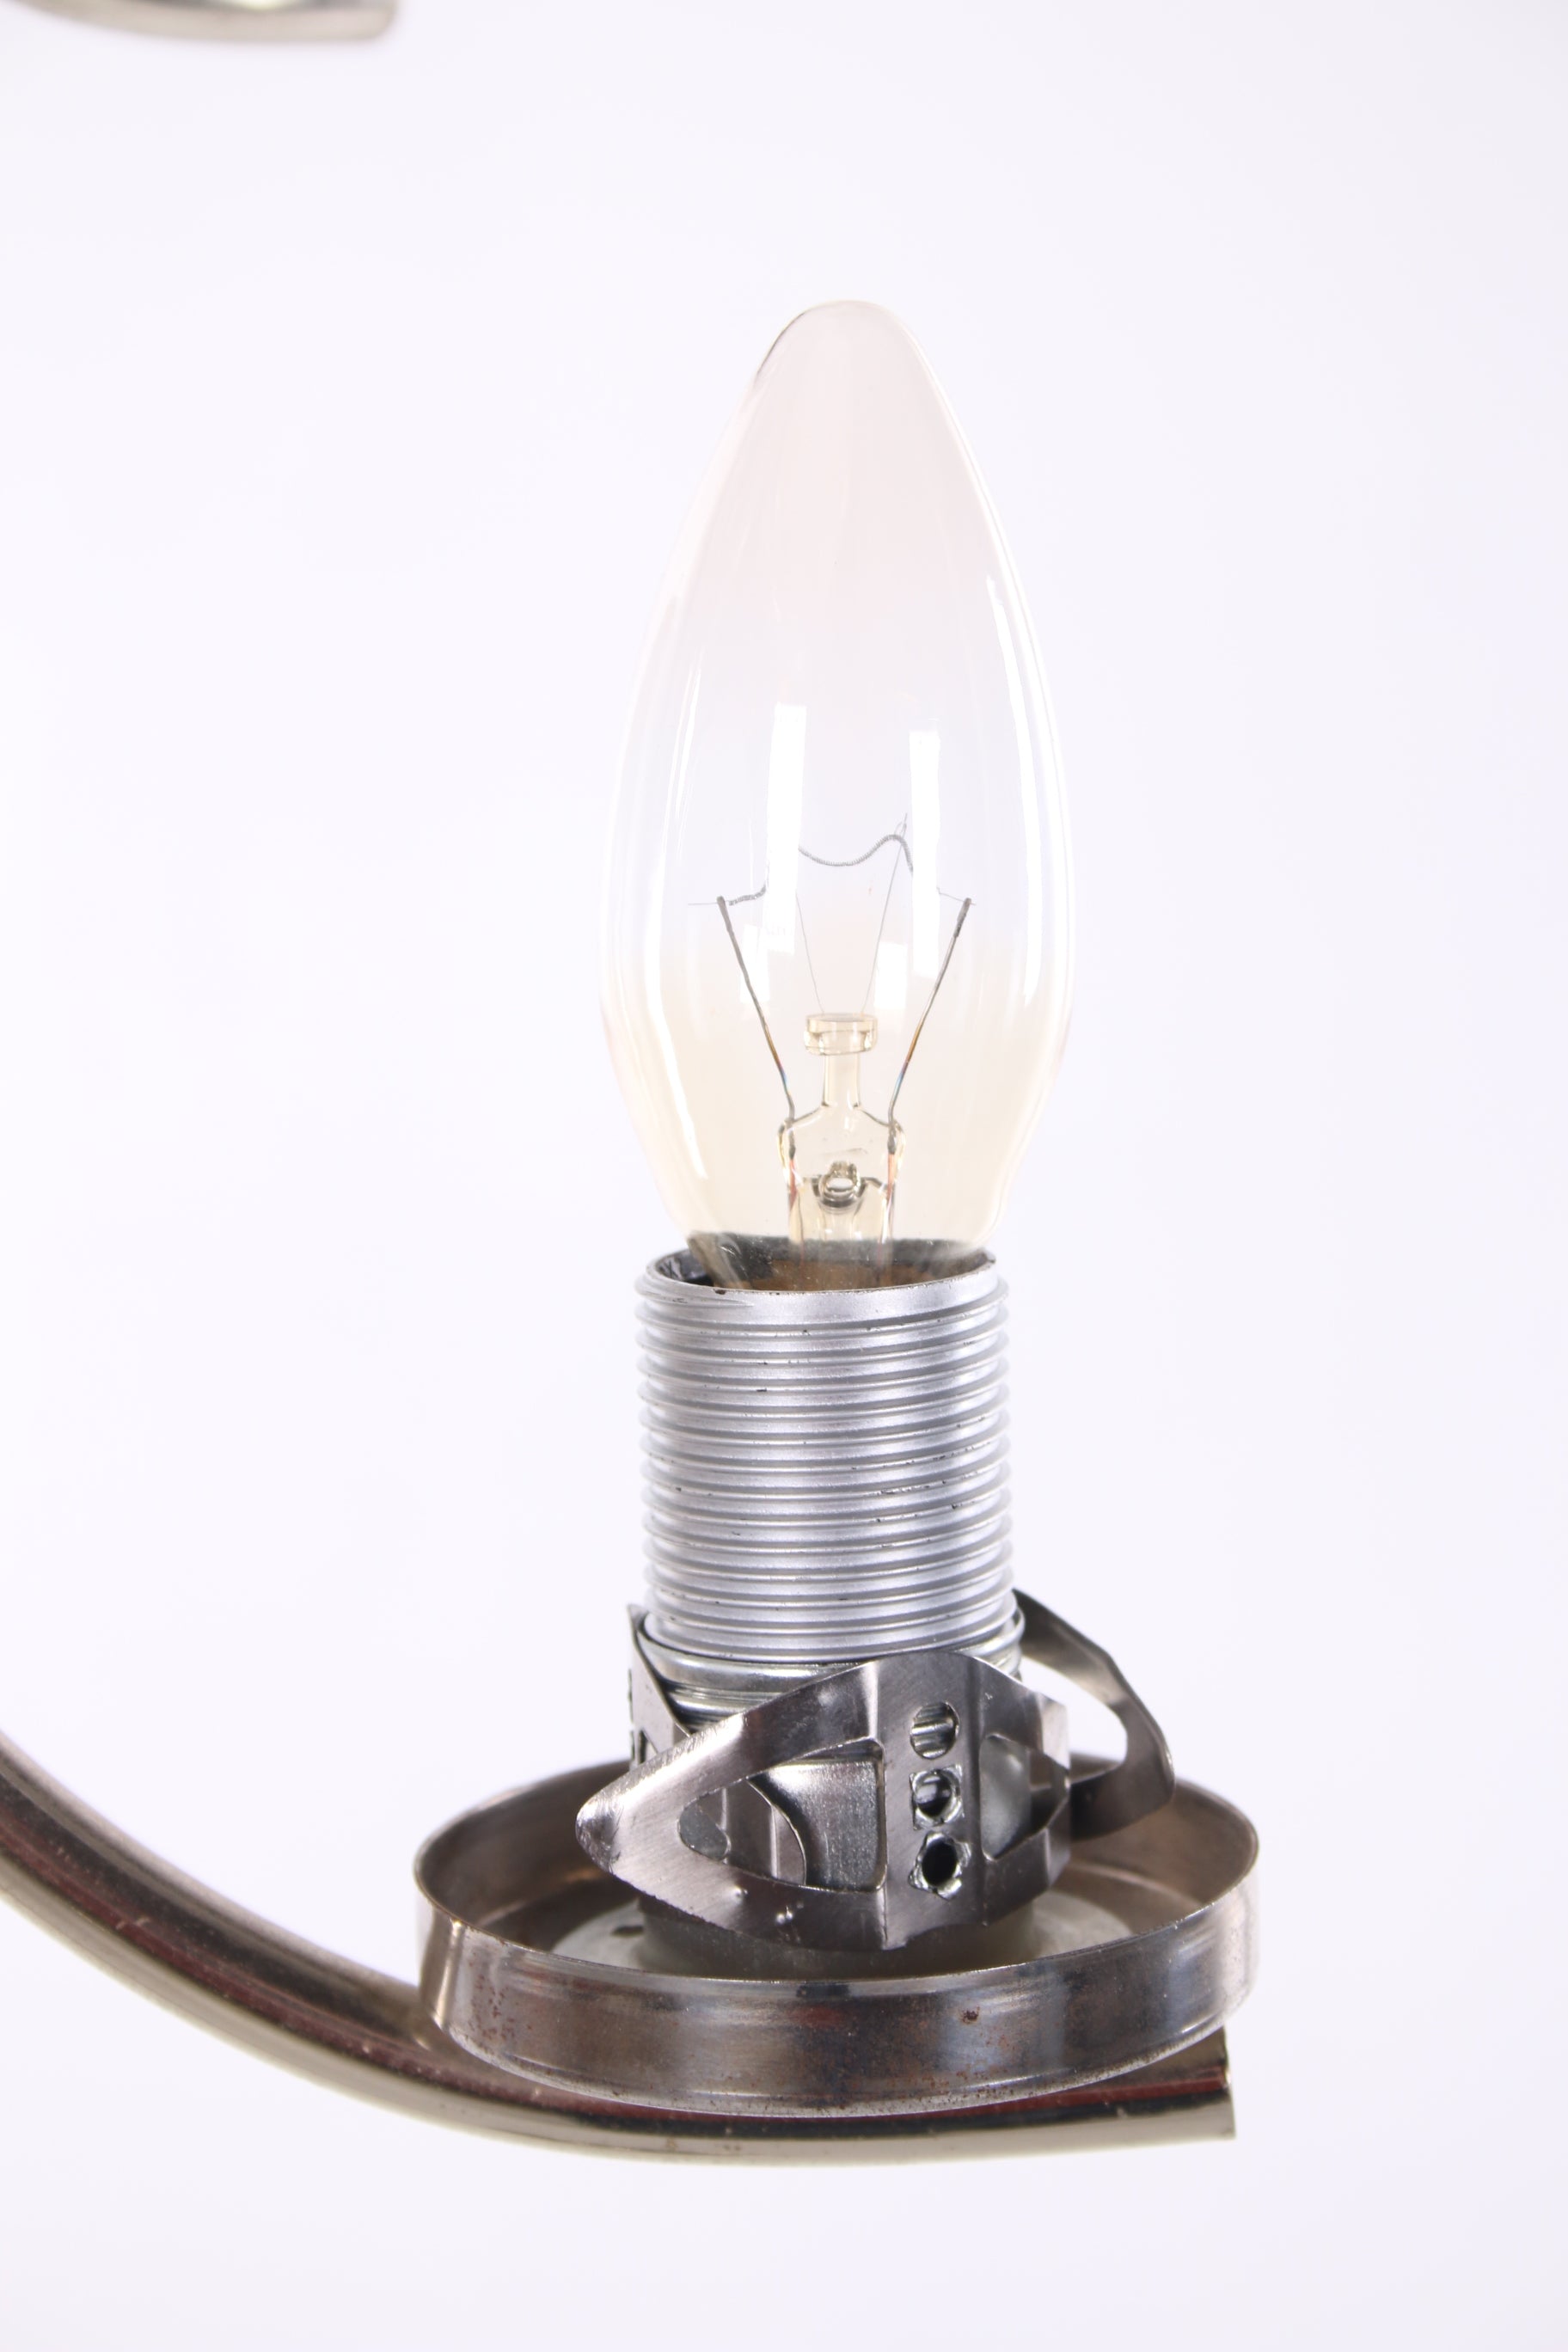 Vloerlamp chrome met 7 Witte glazenbollen detail lampje